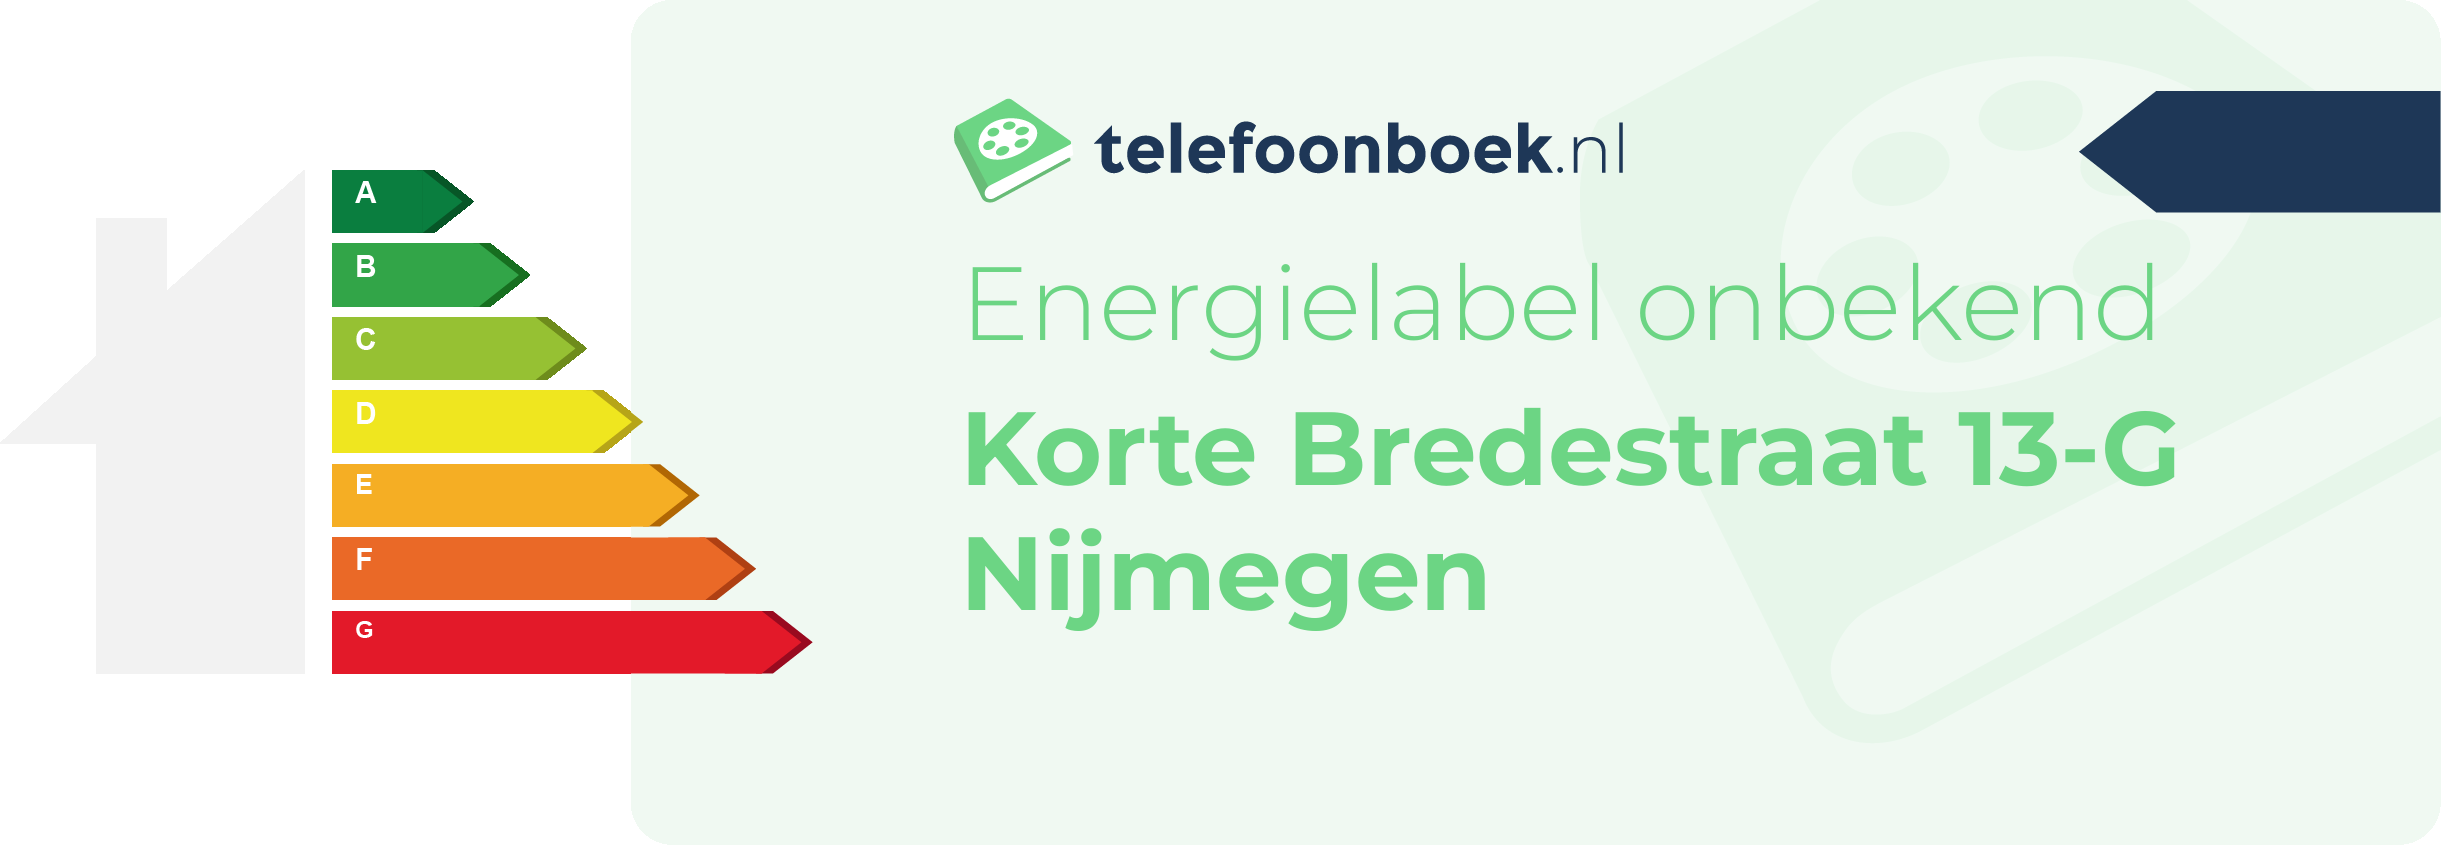 Energielabel Korte Bredestraat 13-G Nijmegen